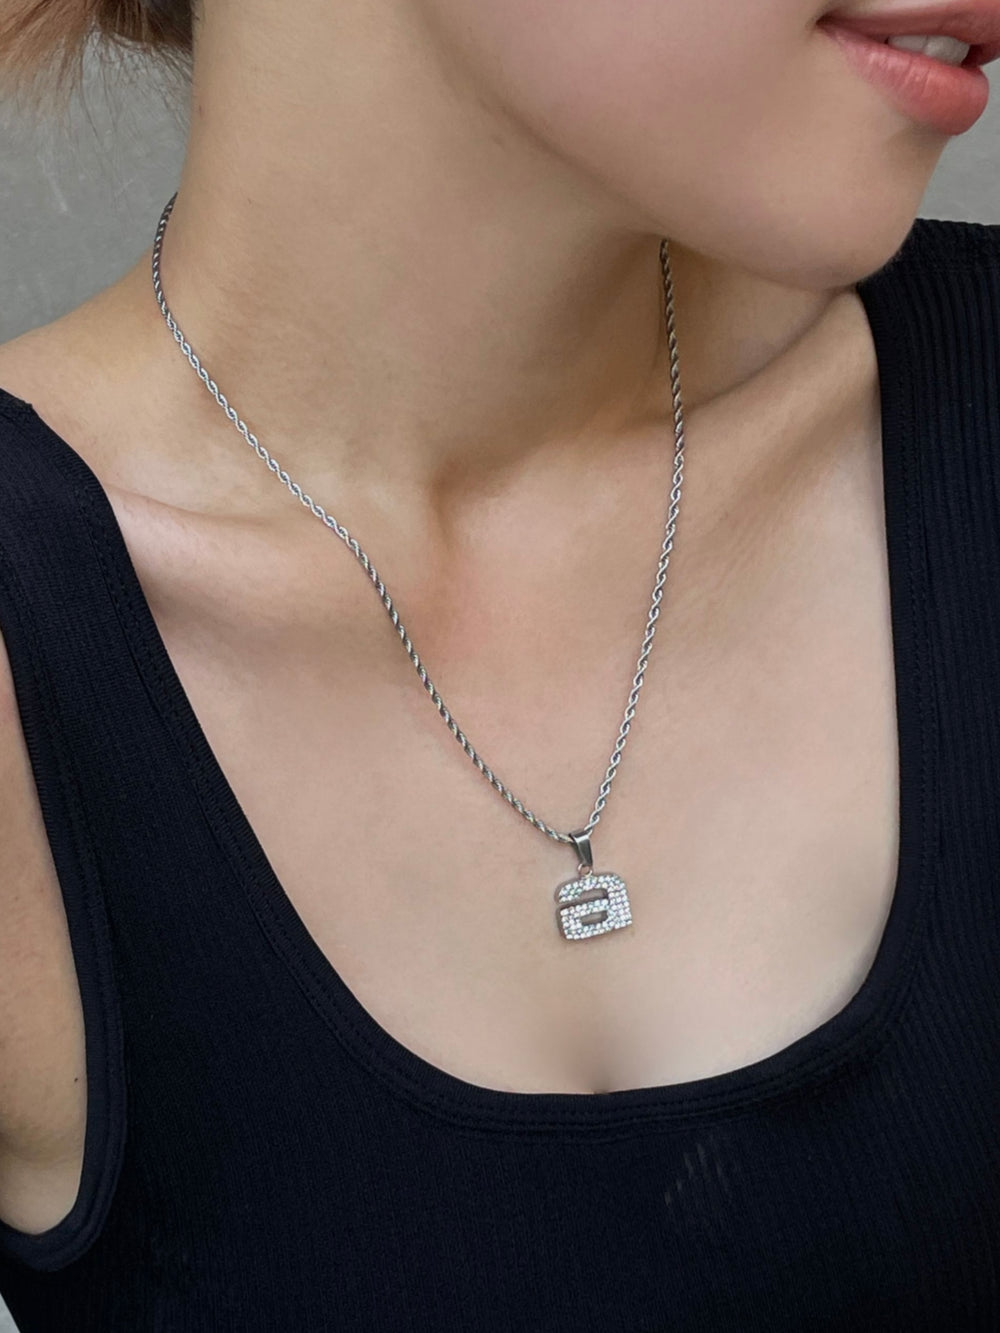 【1万円以上のお買い物でプレゼント】aniend charm necklace